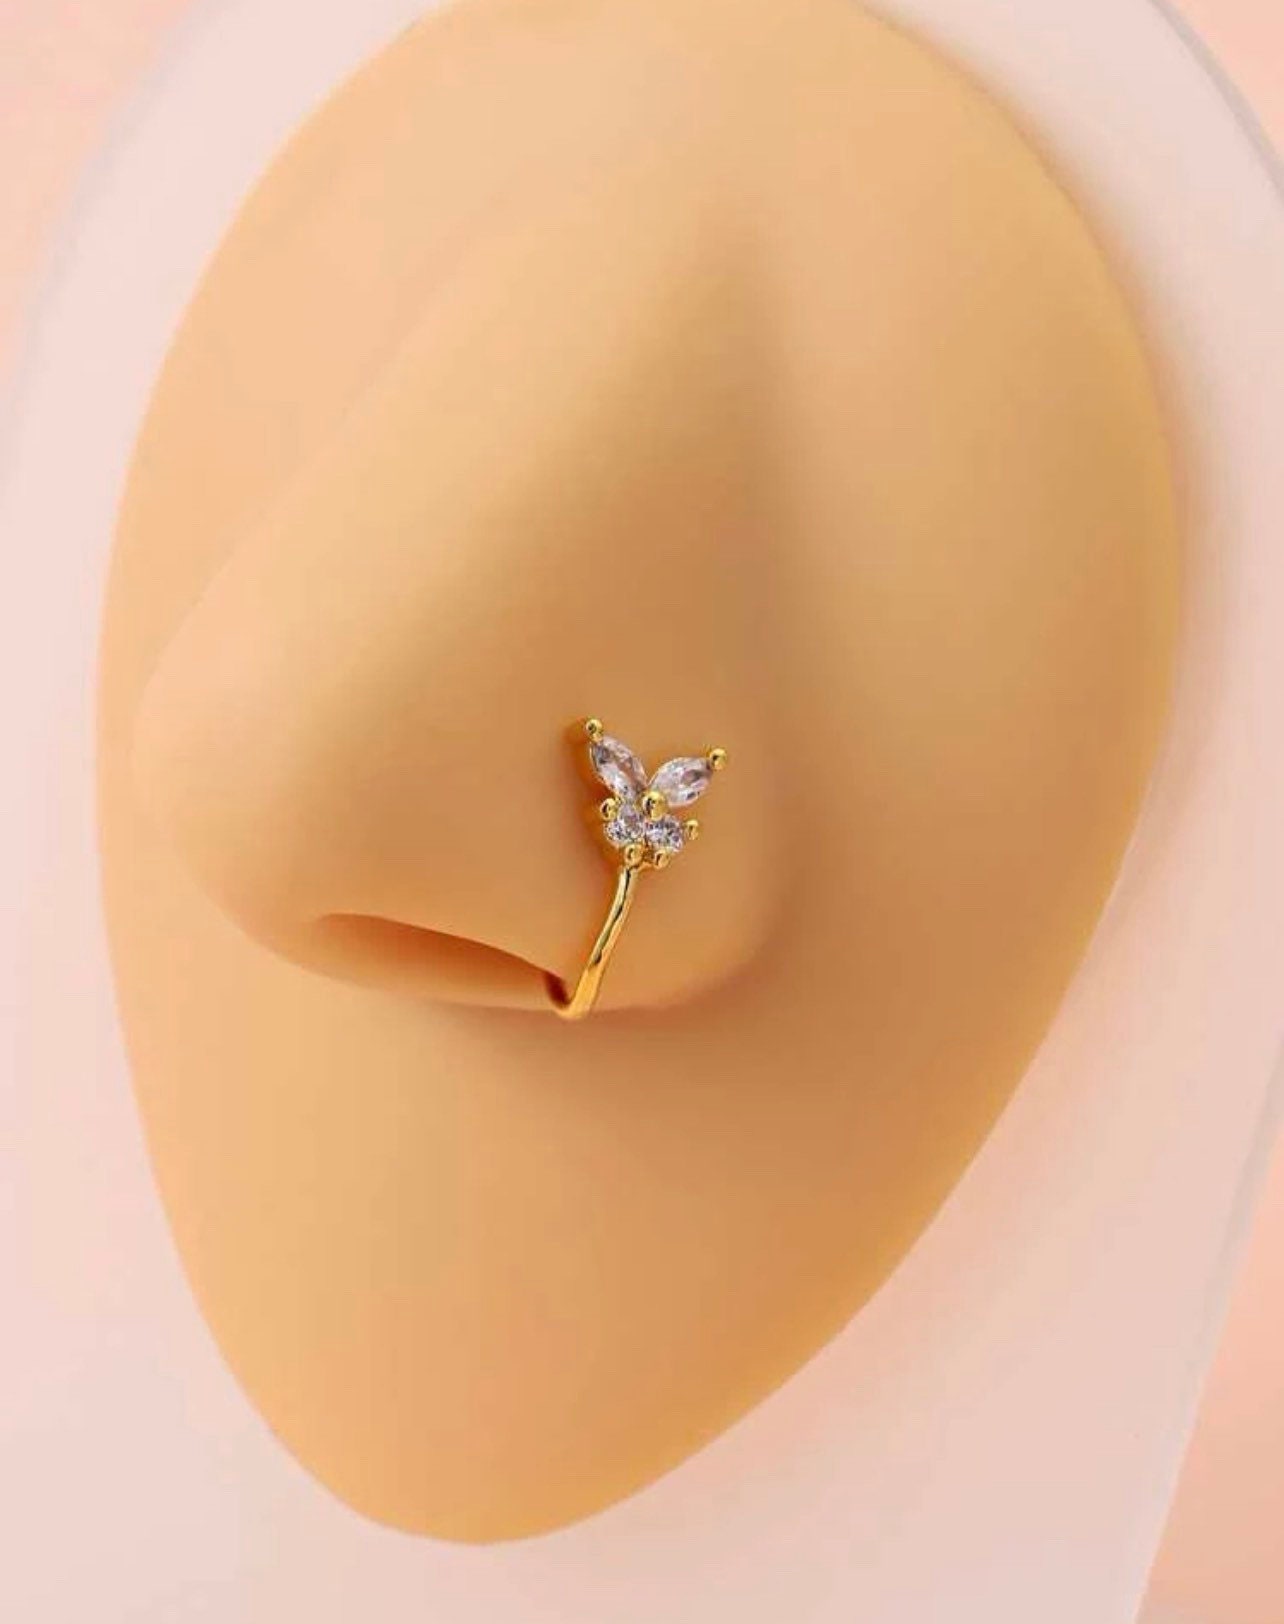 Fancy Nose Ring at Best Price in Bengaluru, Karnataka | Konnectbox